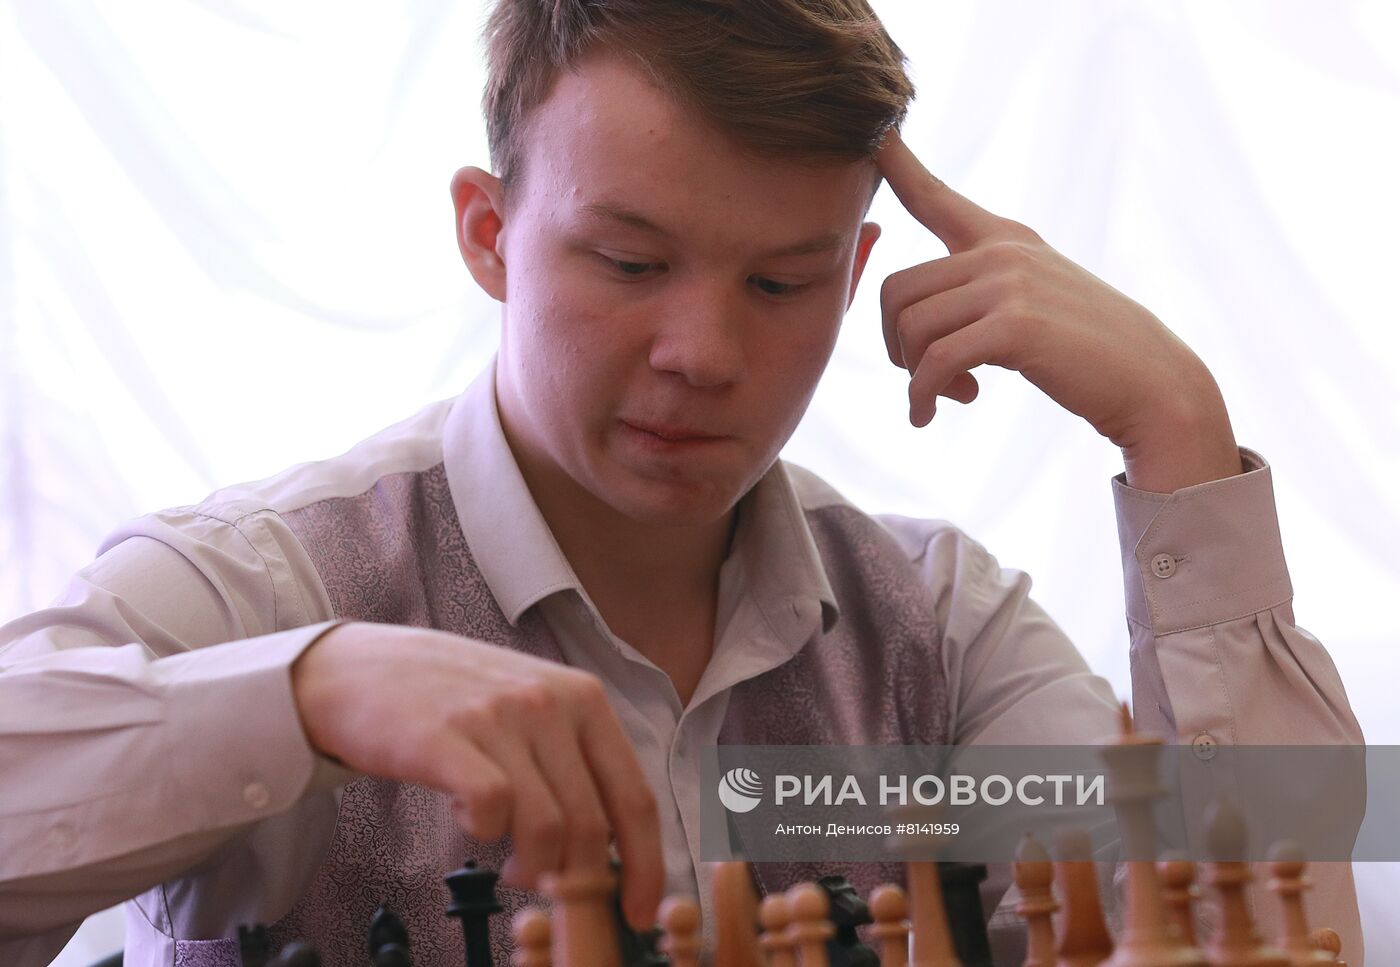 Гроссмейстер С. Карякин провел сеанс одновременной игры для детей в Подмосковье